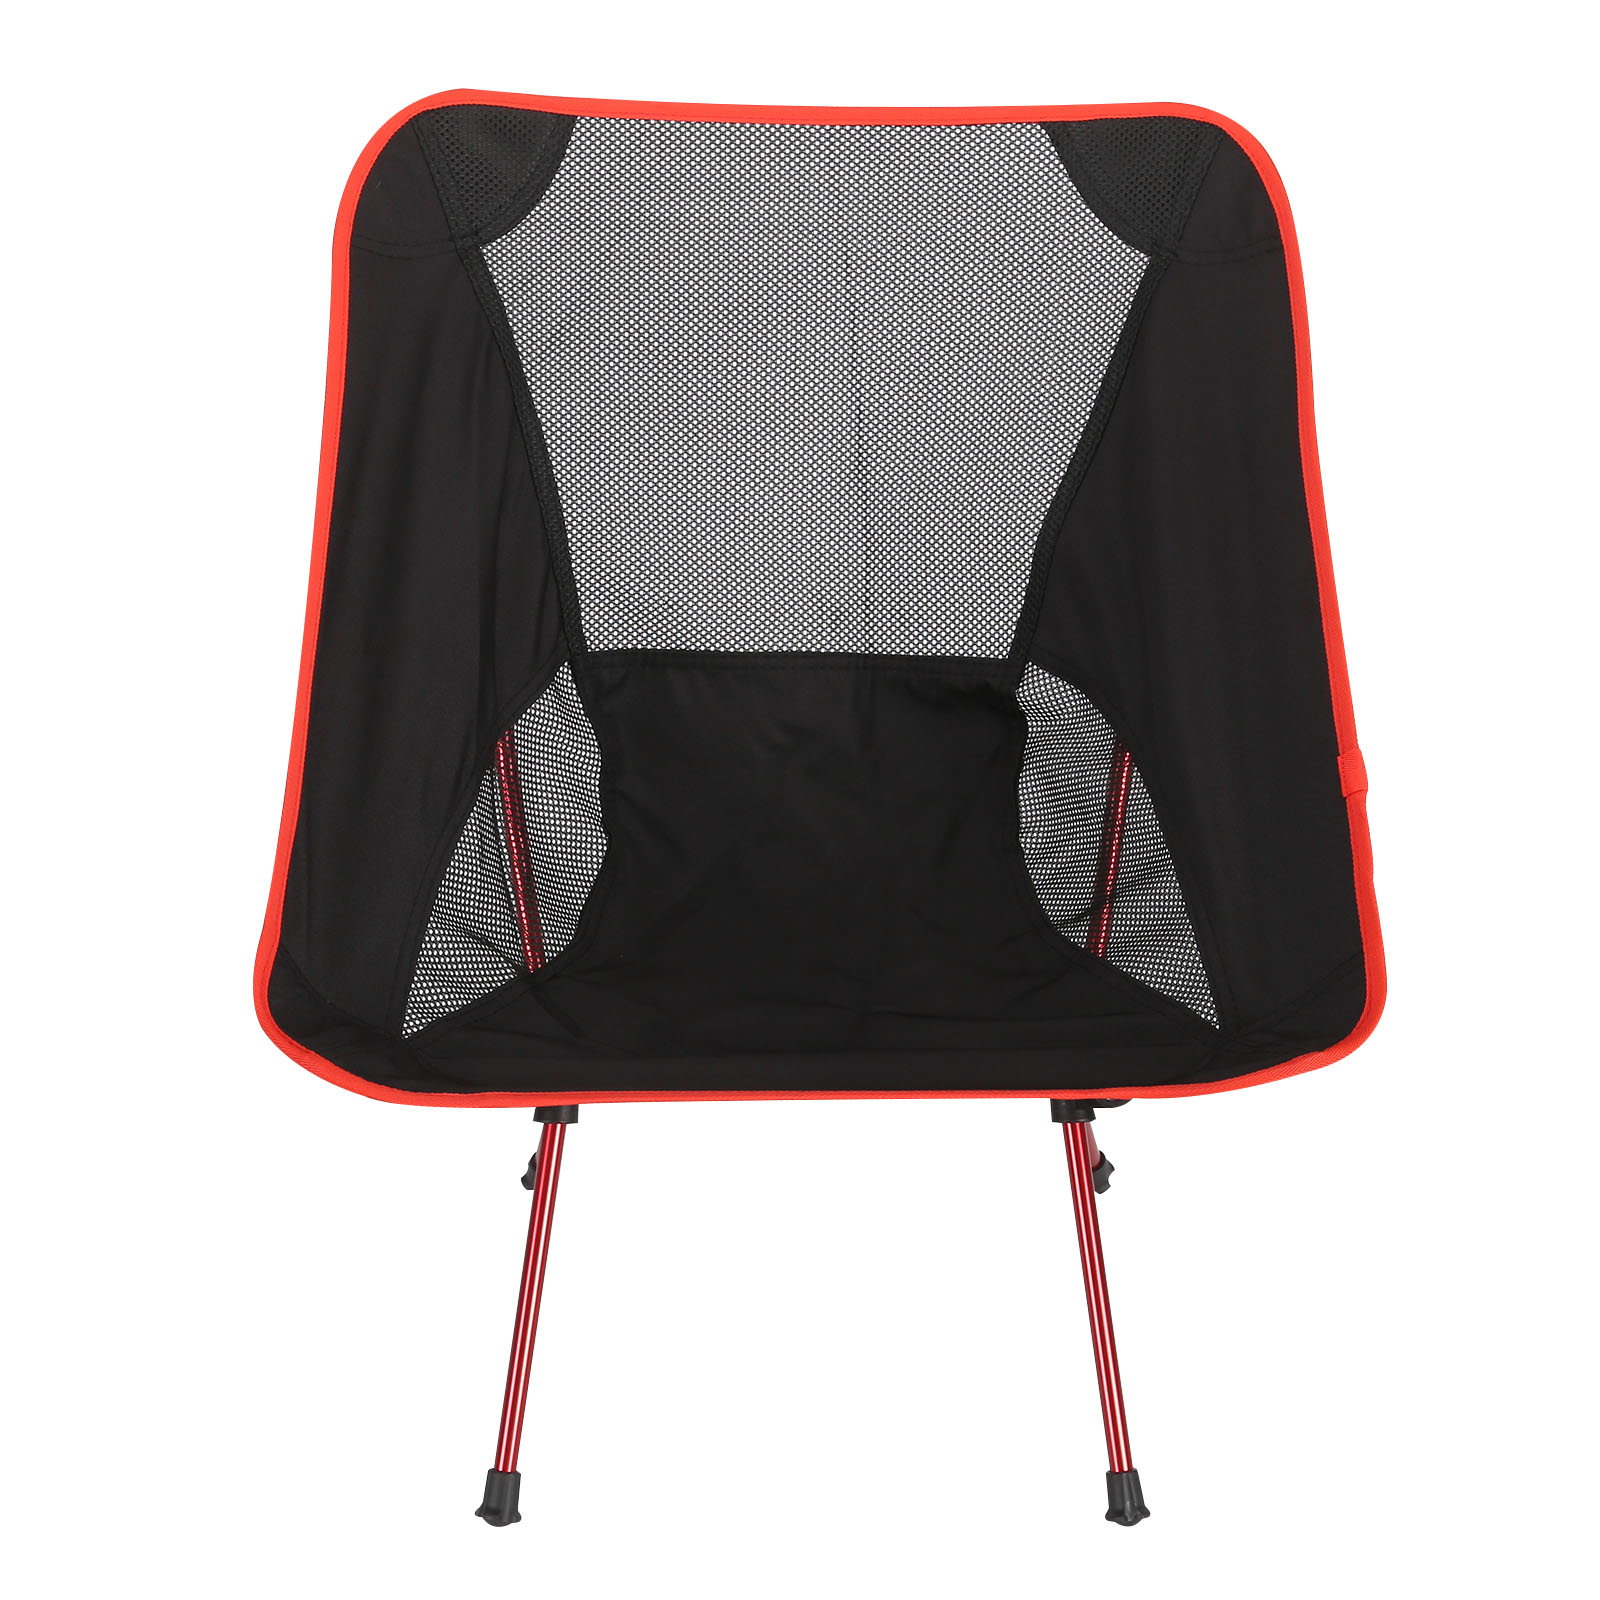 Ultralight Detachable Moon Chair Lightweight Folding